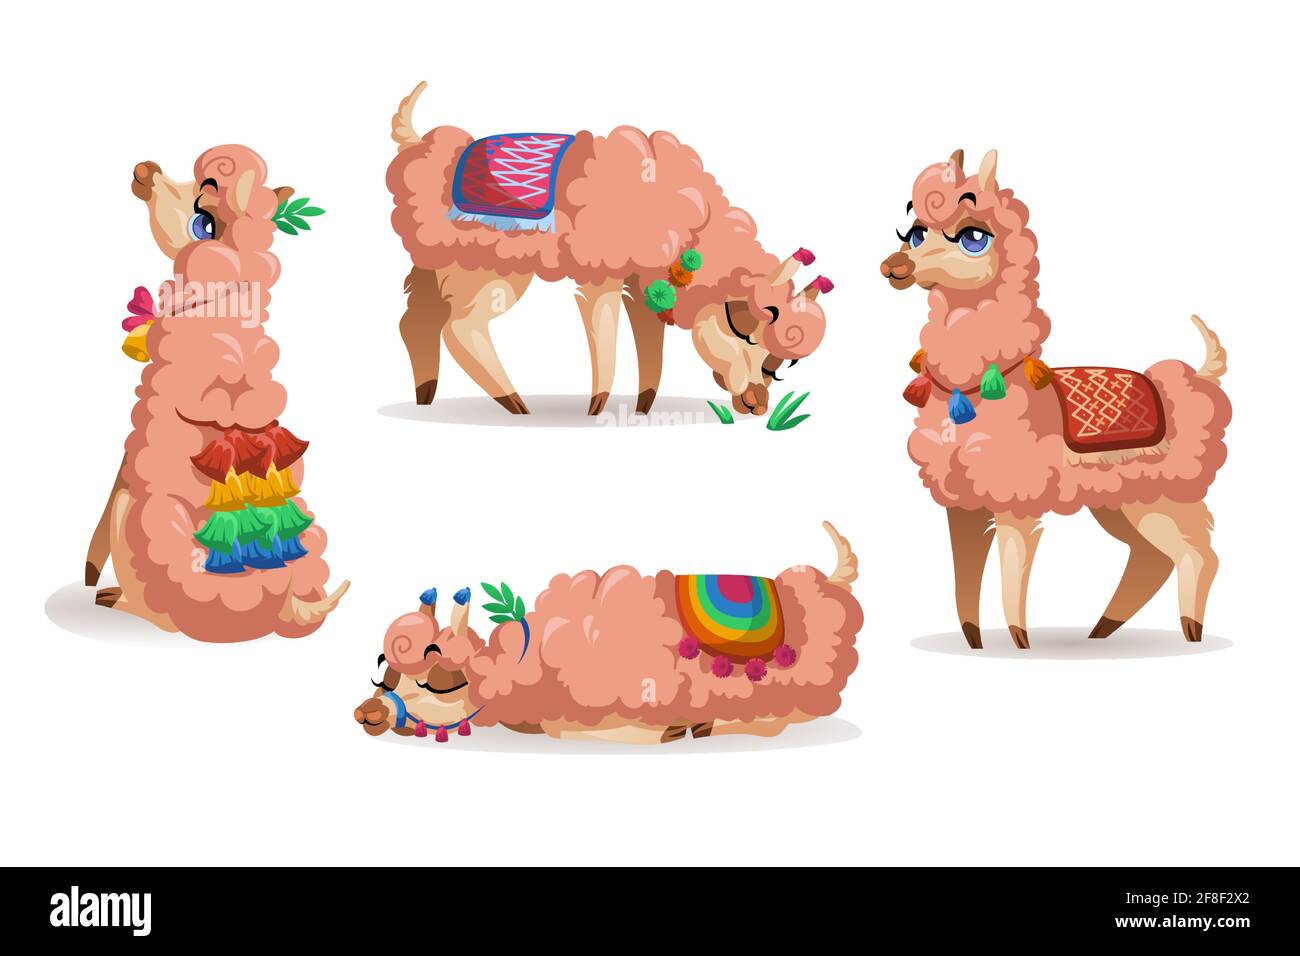 Llama, Perú juego de dibujos animados de animales alpaca. Lama carácter mexicano, mascota con cara linda usar borlas en las orejas y manta diferentes poses sentado, dormir, pastar y permanecer aislado sobre fondo blanco Ilustración del Vector